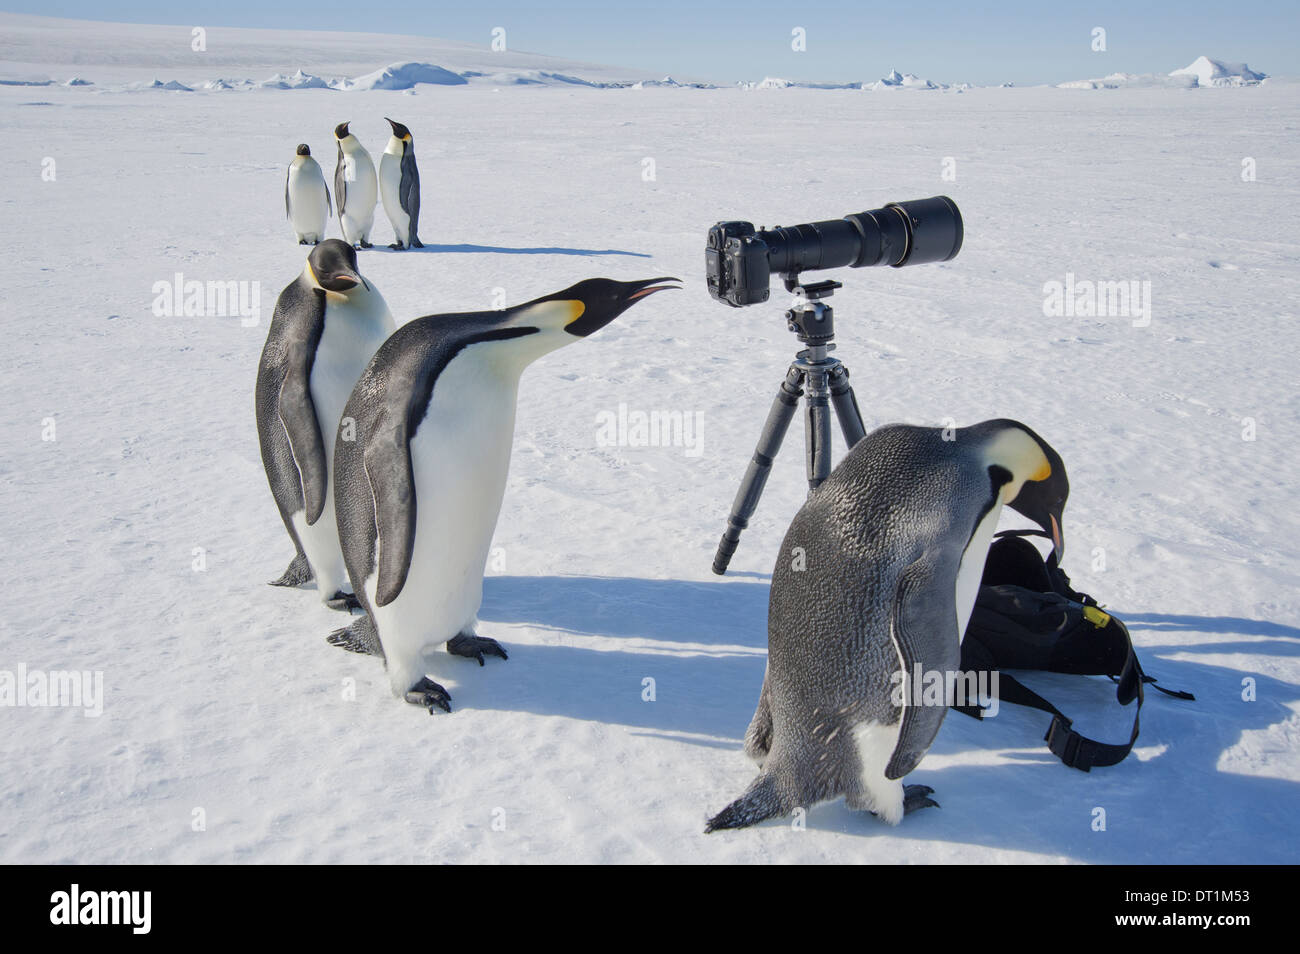 Un pequeño grupo de curiosos pingüinos Emperador mirando a la cámara y un trípode sobre el hielo de un pájaro mirando a través del visor Foto de stock